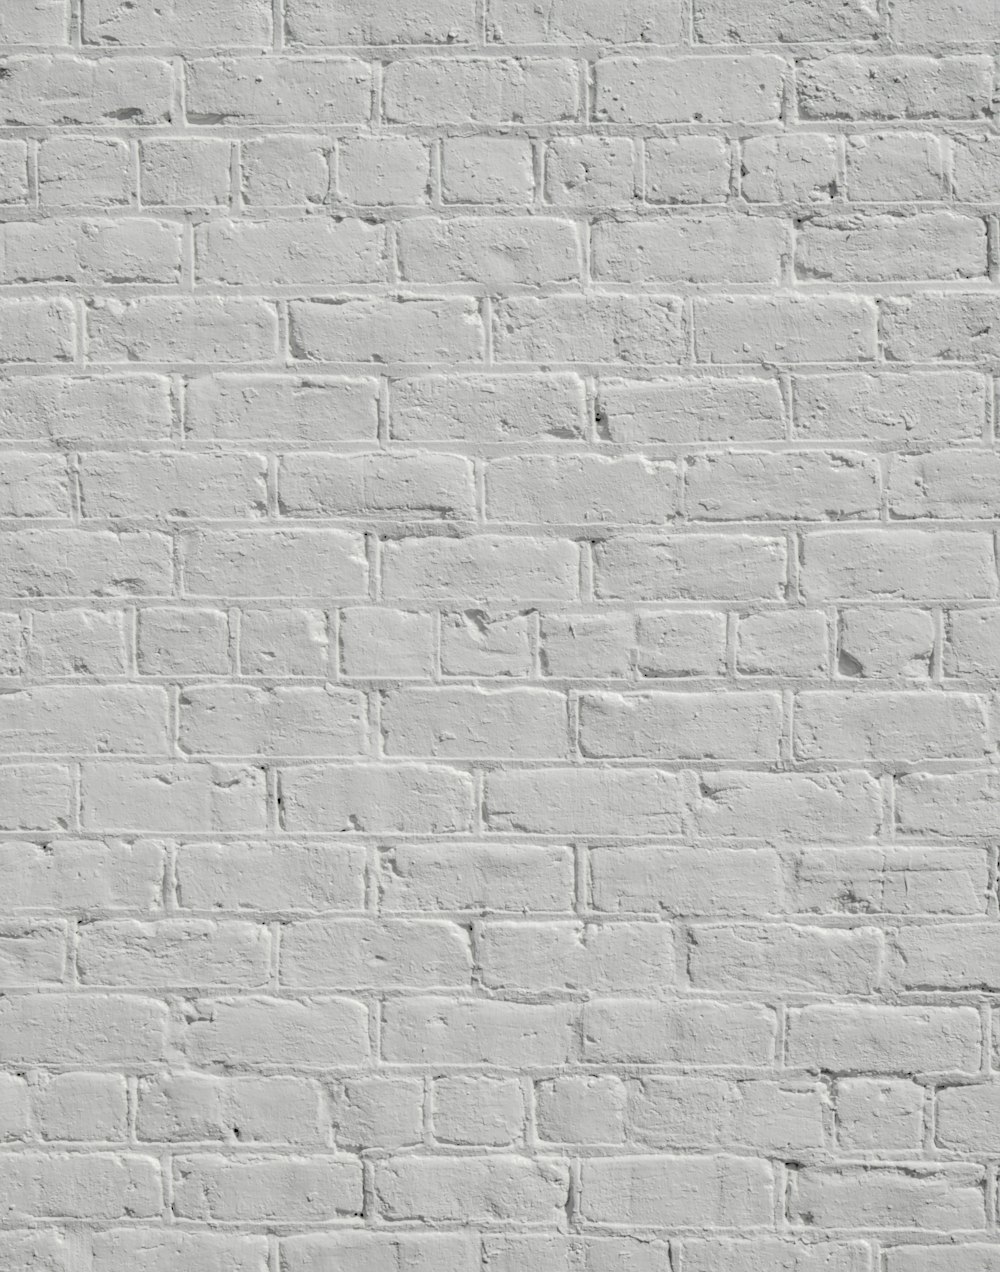 박격포나 박격포가 없는 흰색 벽돌 벽